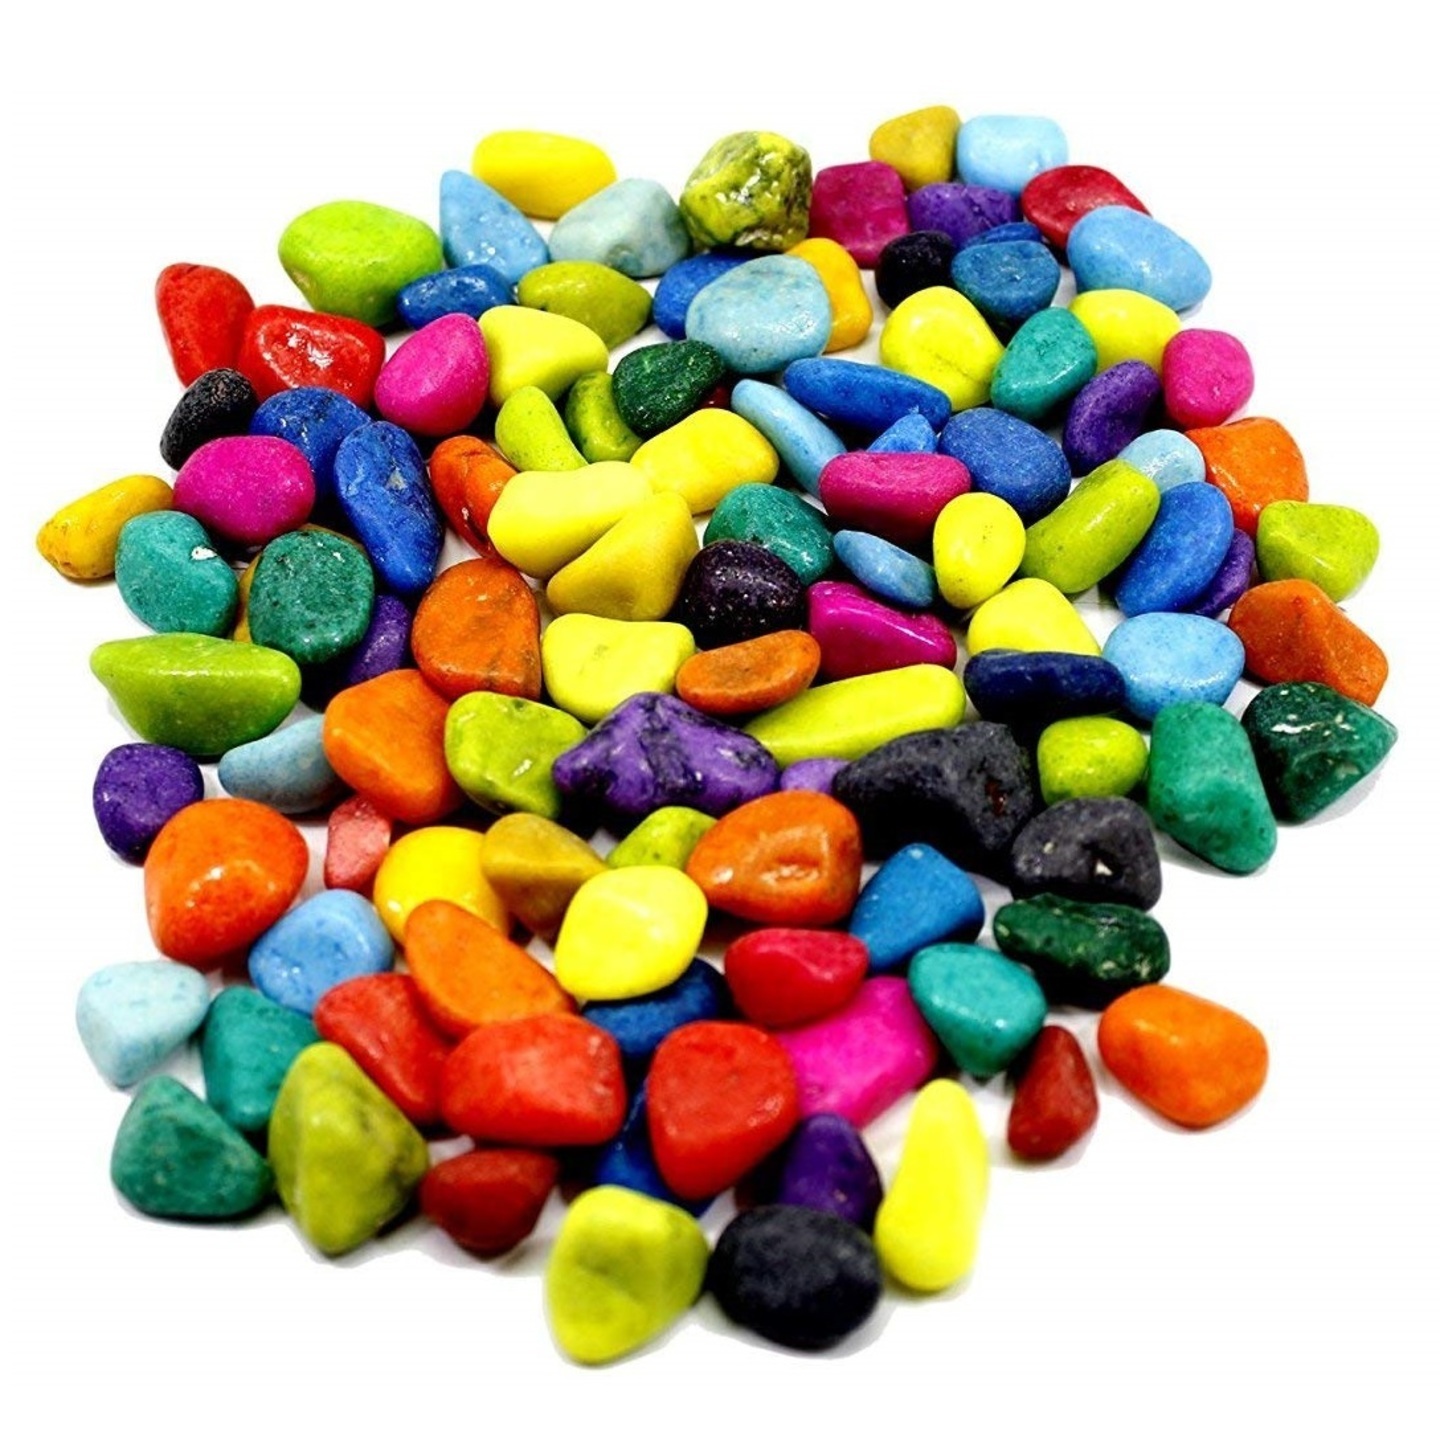 ulti-color pebbles for  Plants Pots, Fish Tank Aquarium, Table Decor, Vase Fillers, Home Decor 1 KG